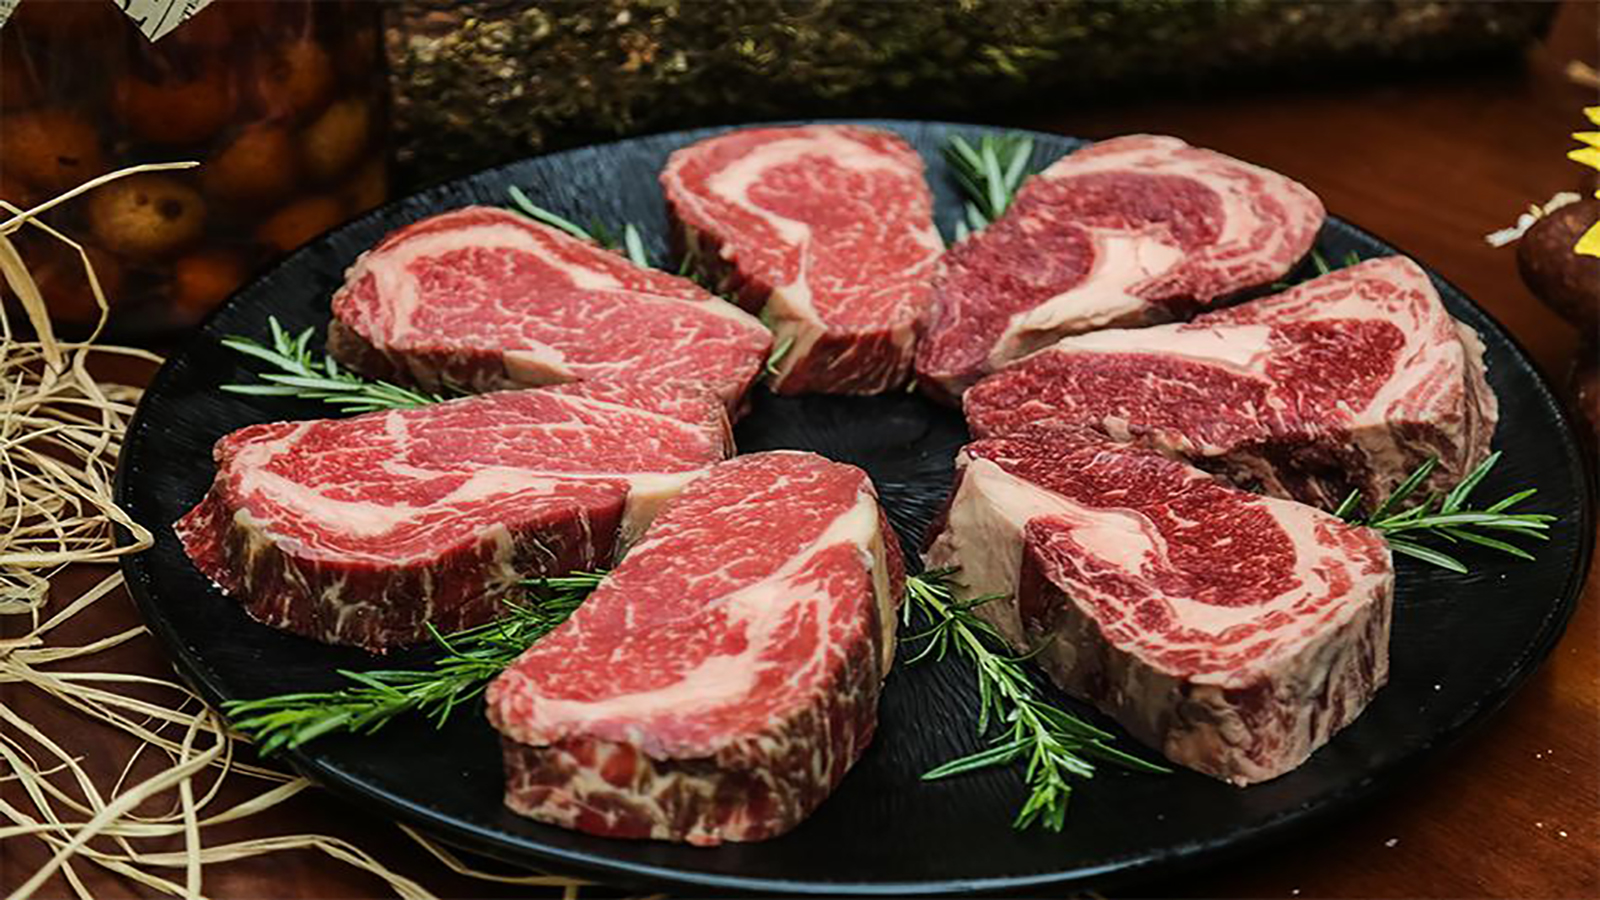 اليابان تصنع أول شريحة لحم بقر 